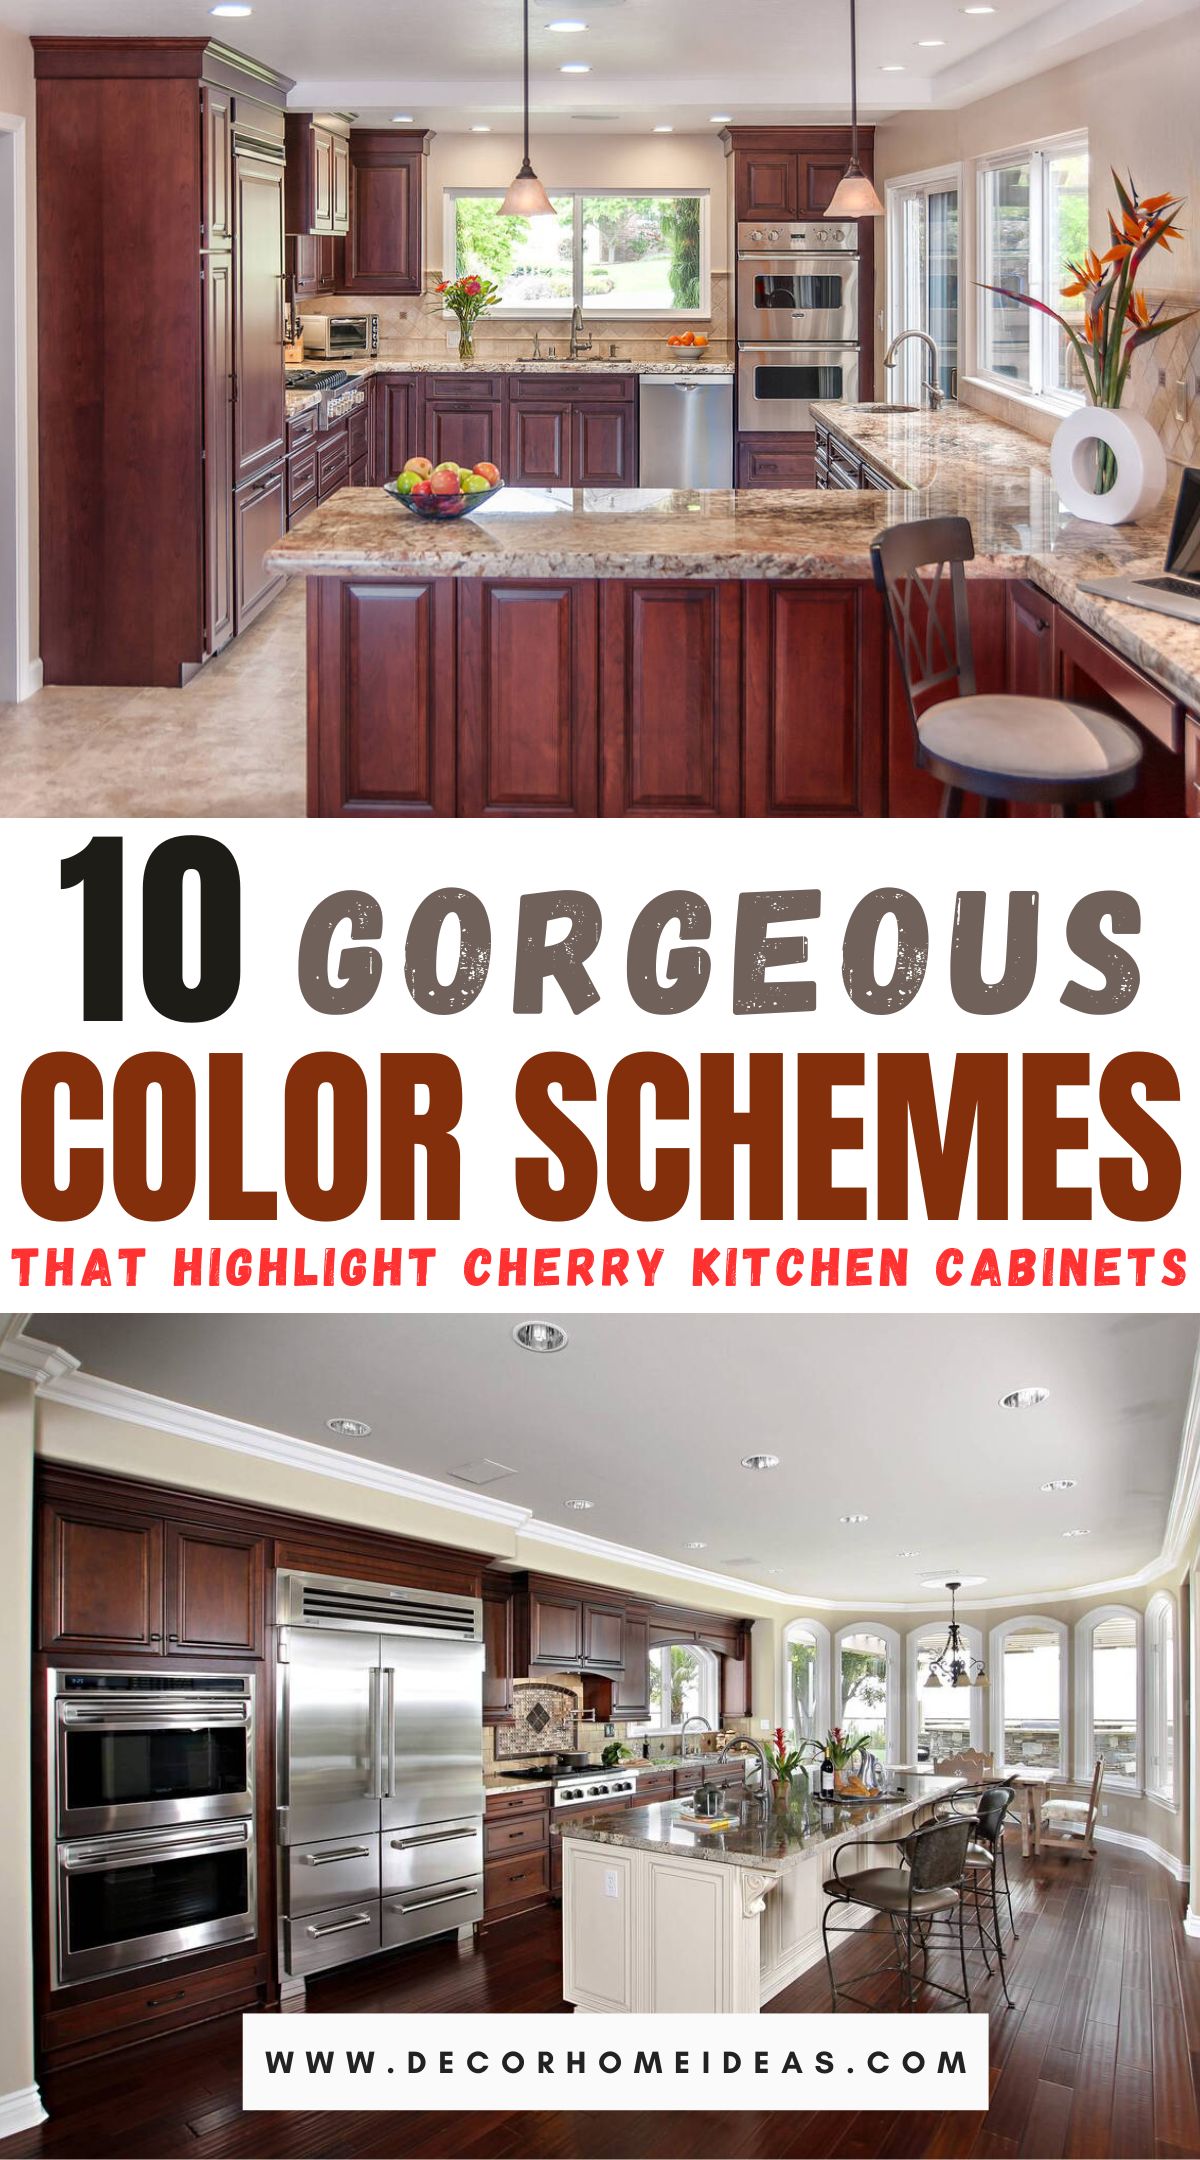 Best Cherry Cabinet Kitchen Color Schemes Ideas